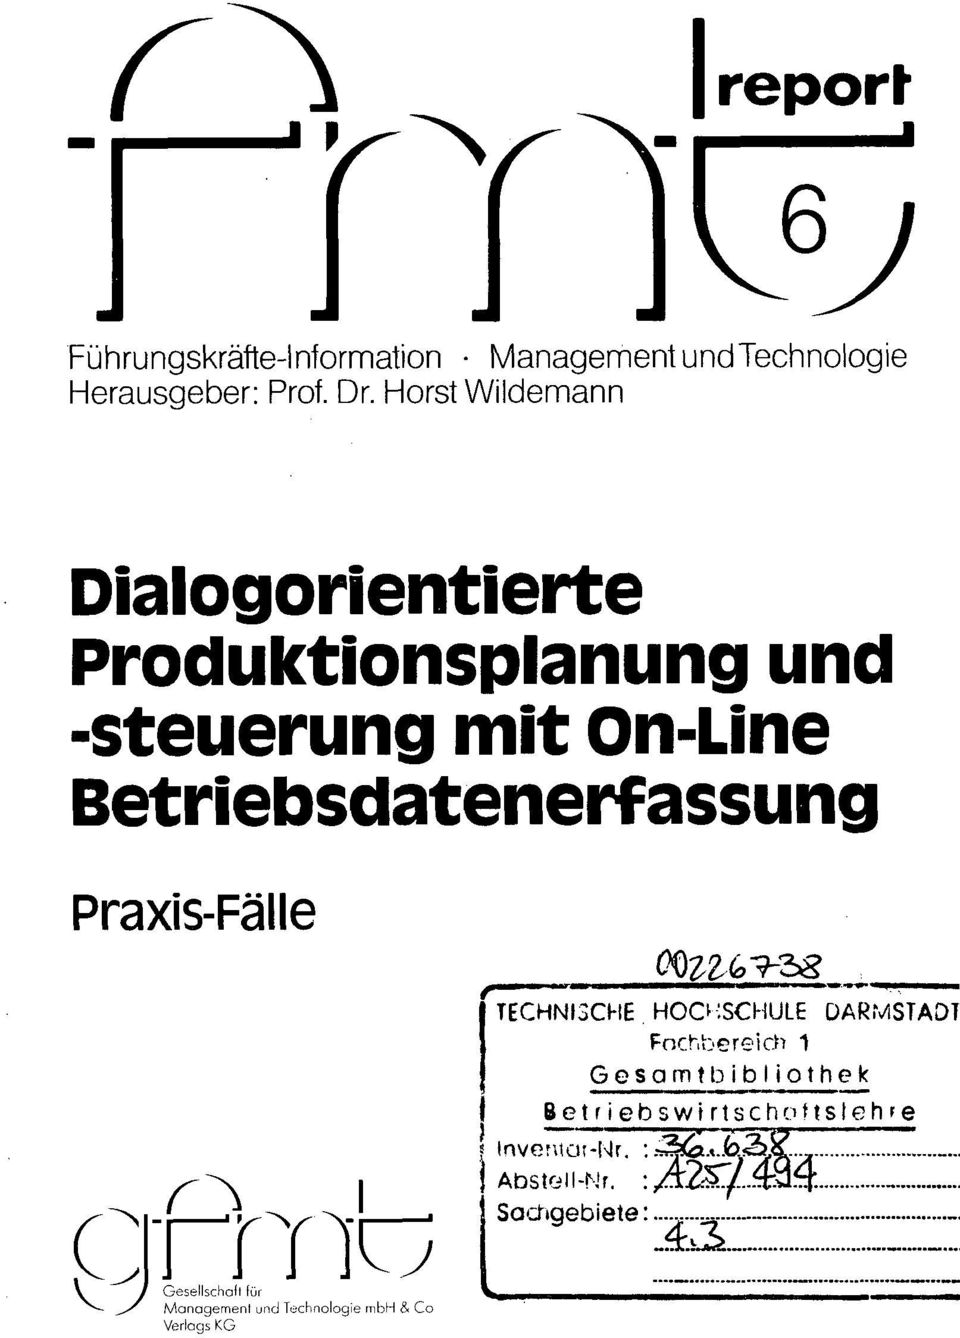 Praxis-Fälle Pmb Gesellscholl für Managemenl und Technologie mbh & Co Verlags KG TECHNISCHE HOCKSCHULE